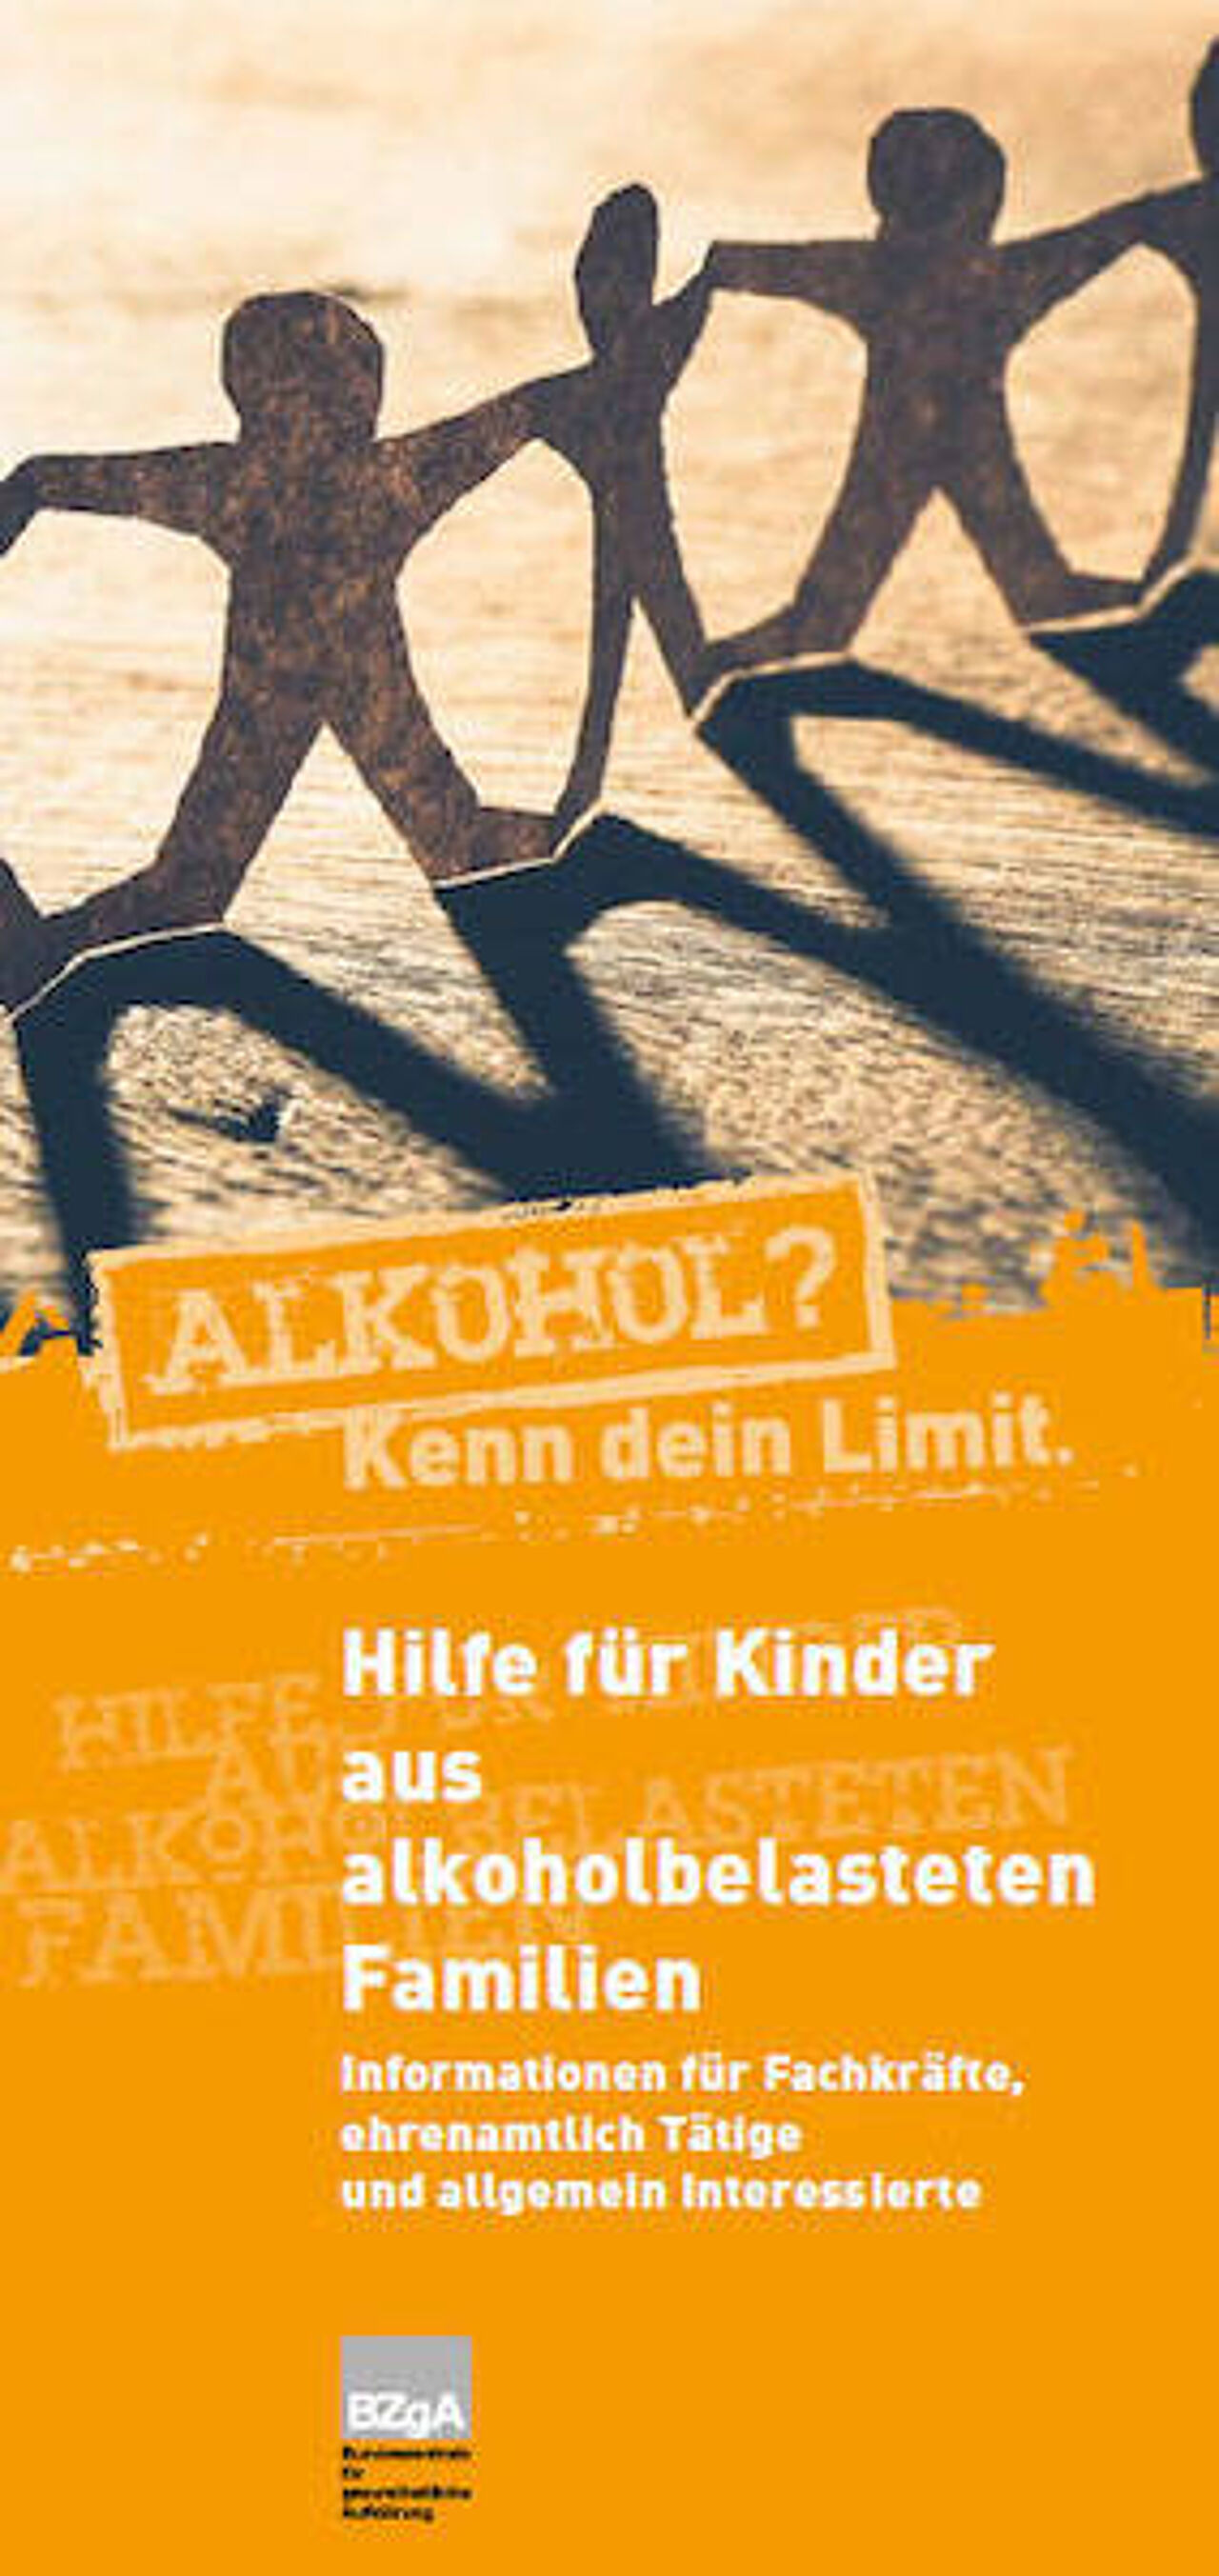 Deckblatt des Faltblatts "Hilfe für Kinder aus alkoholbelasteten Familien"